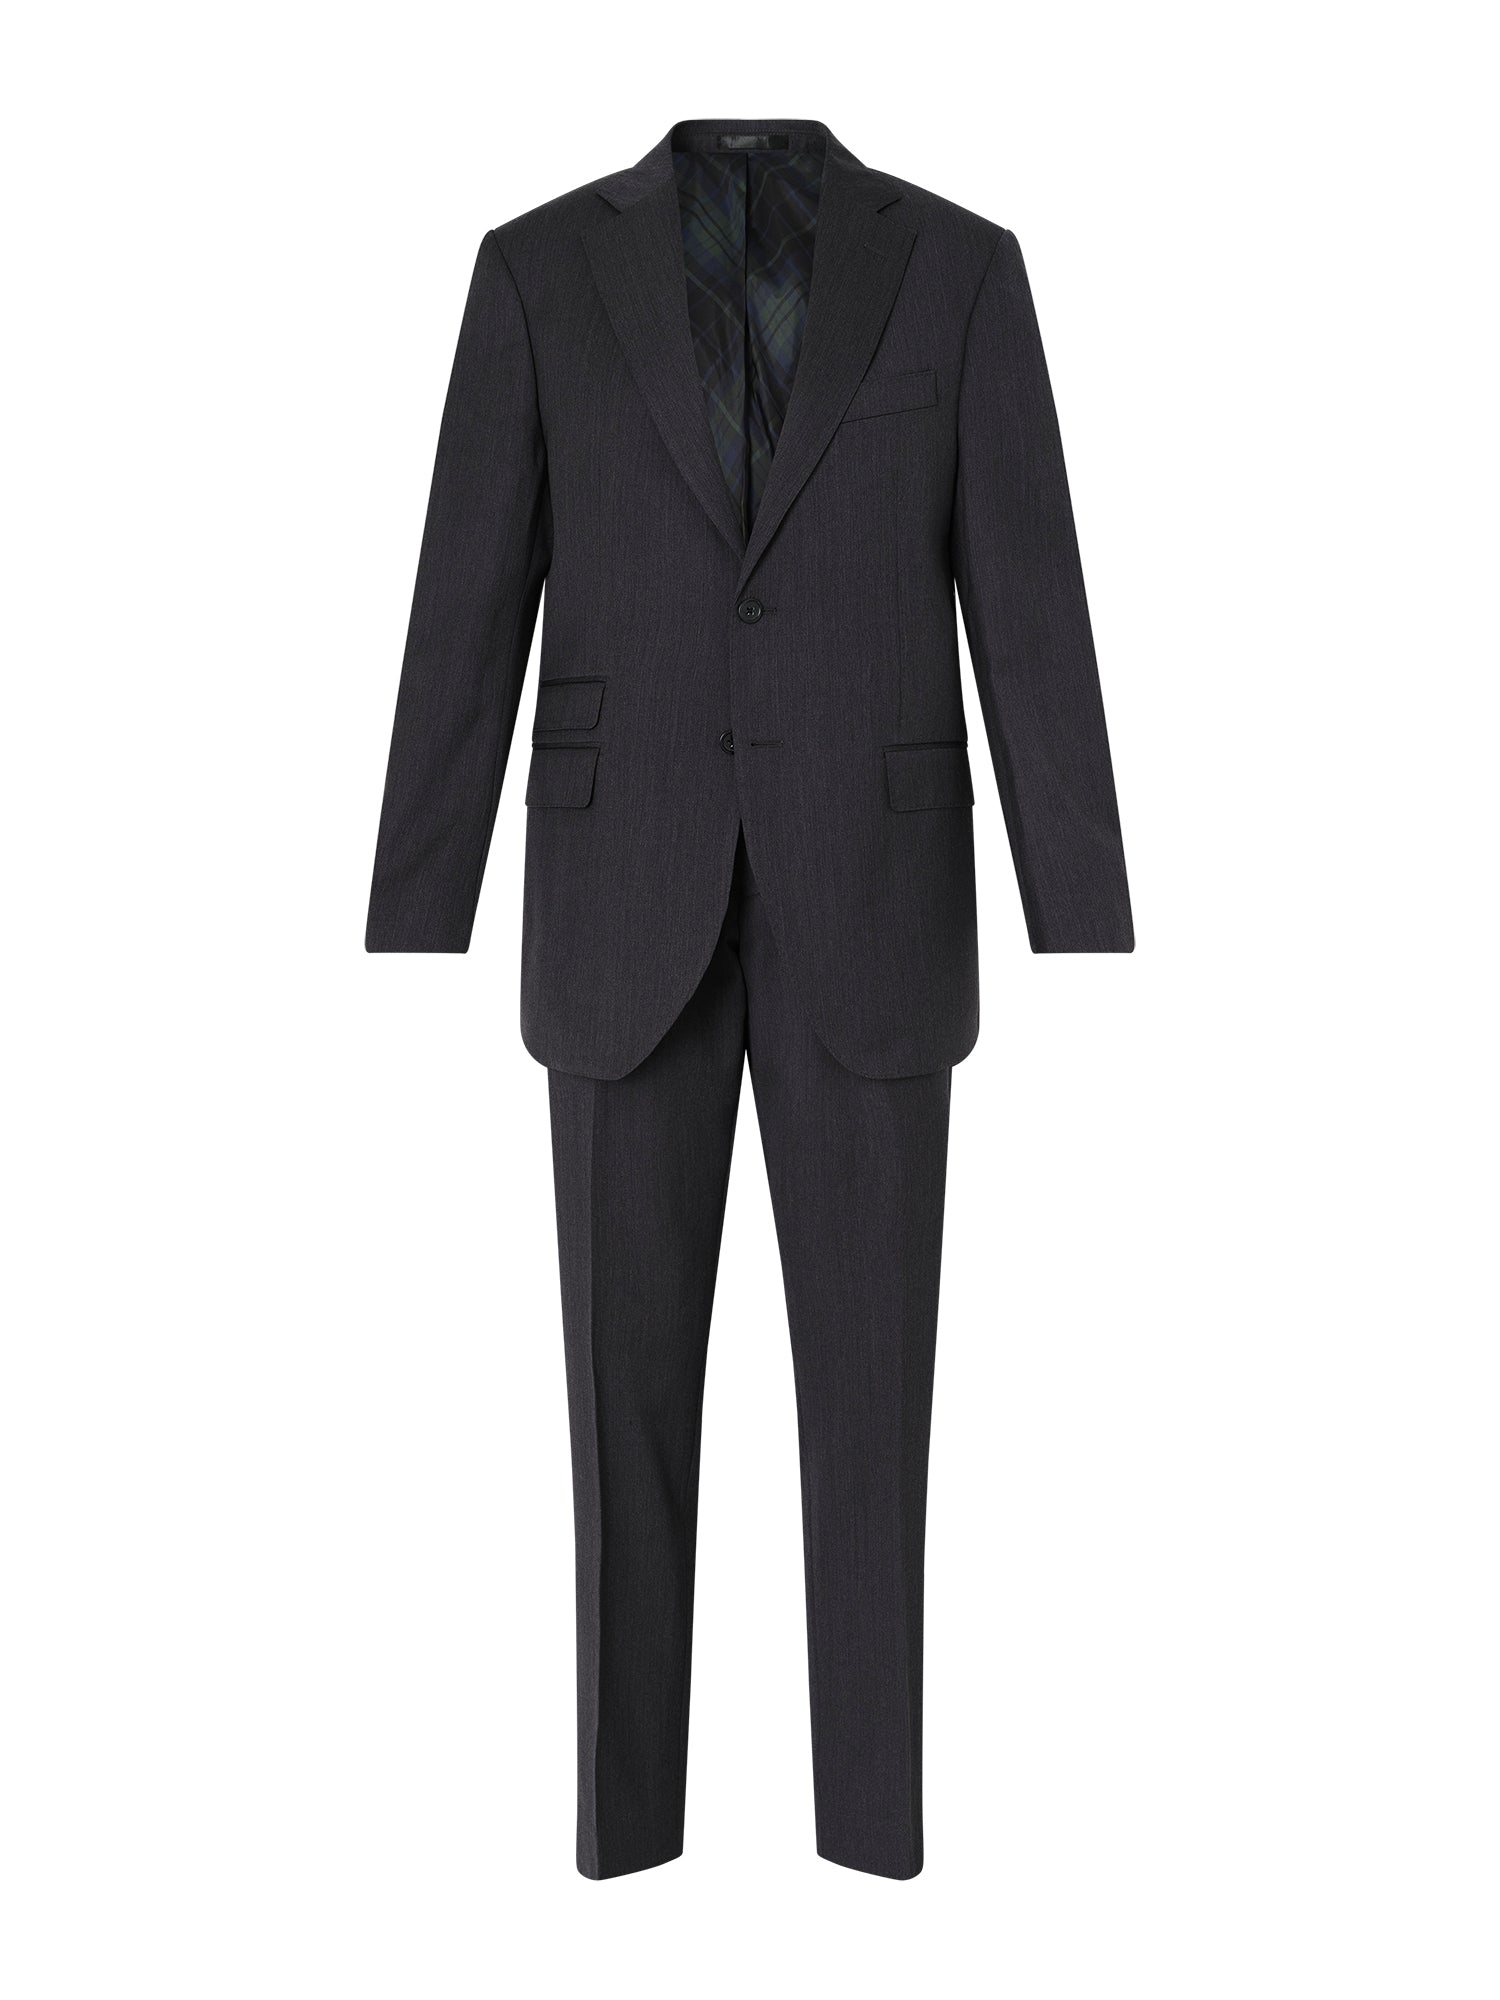 Charcoal San Marco Suit Jacket